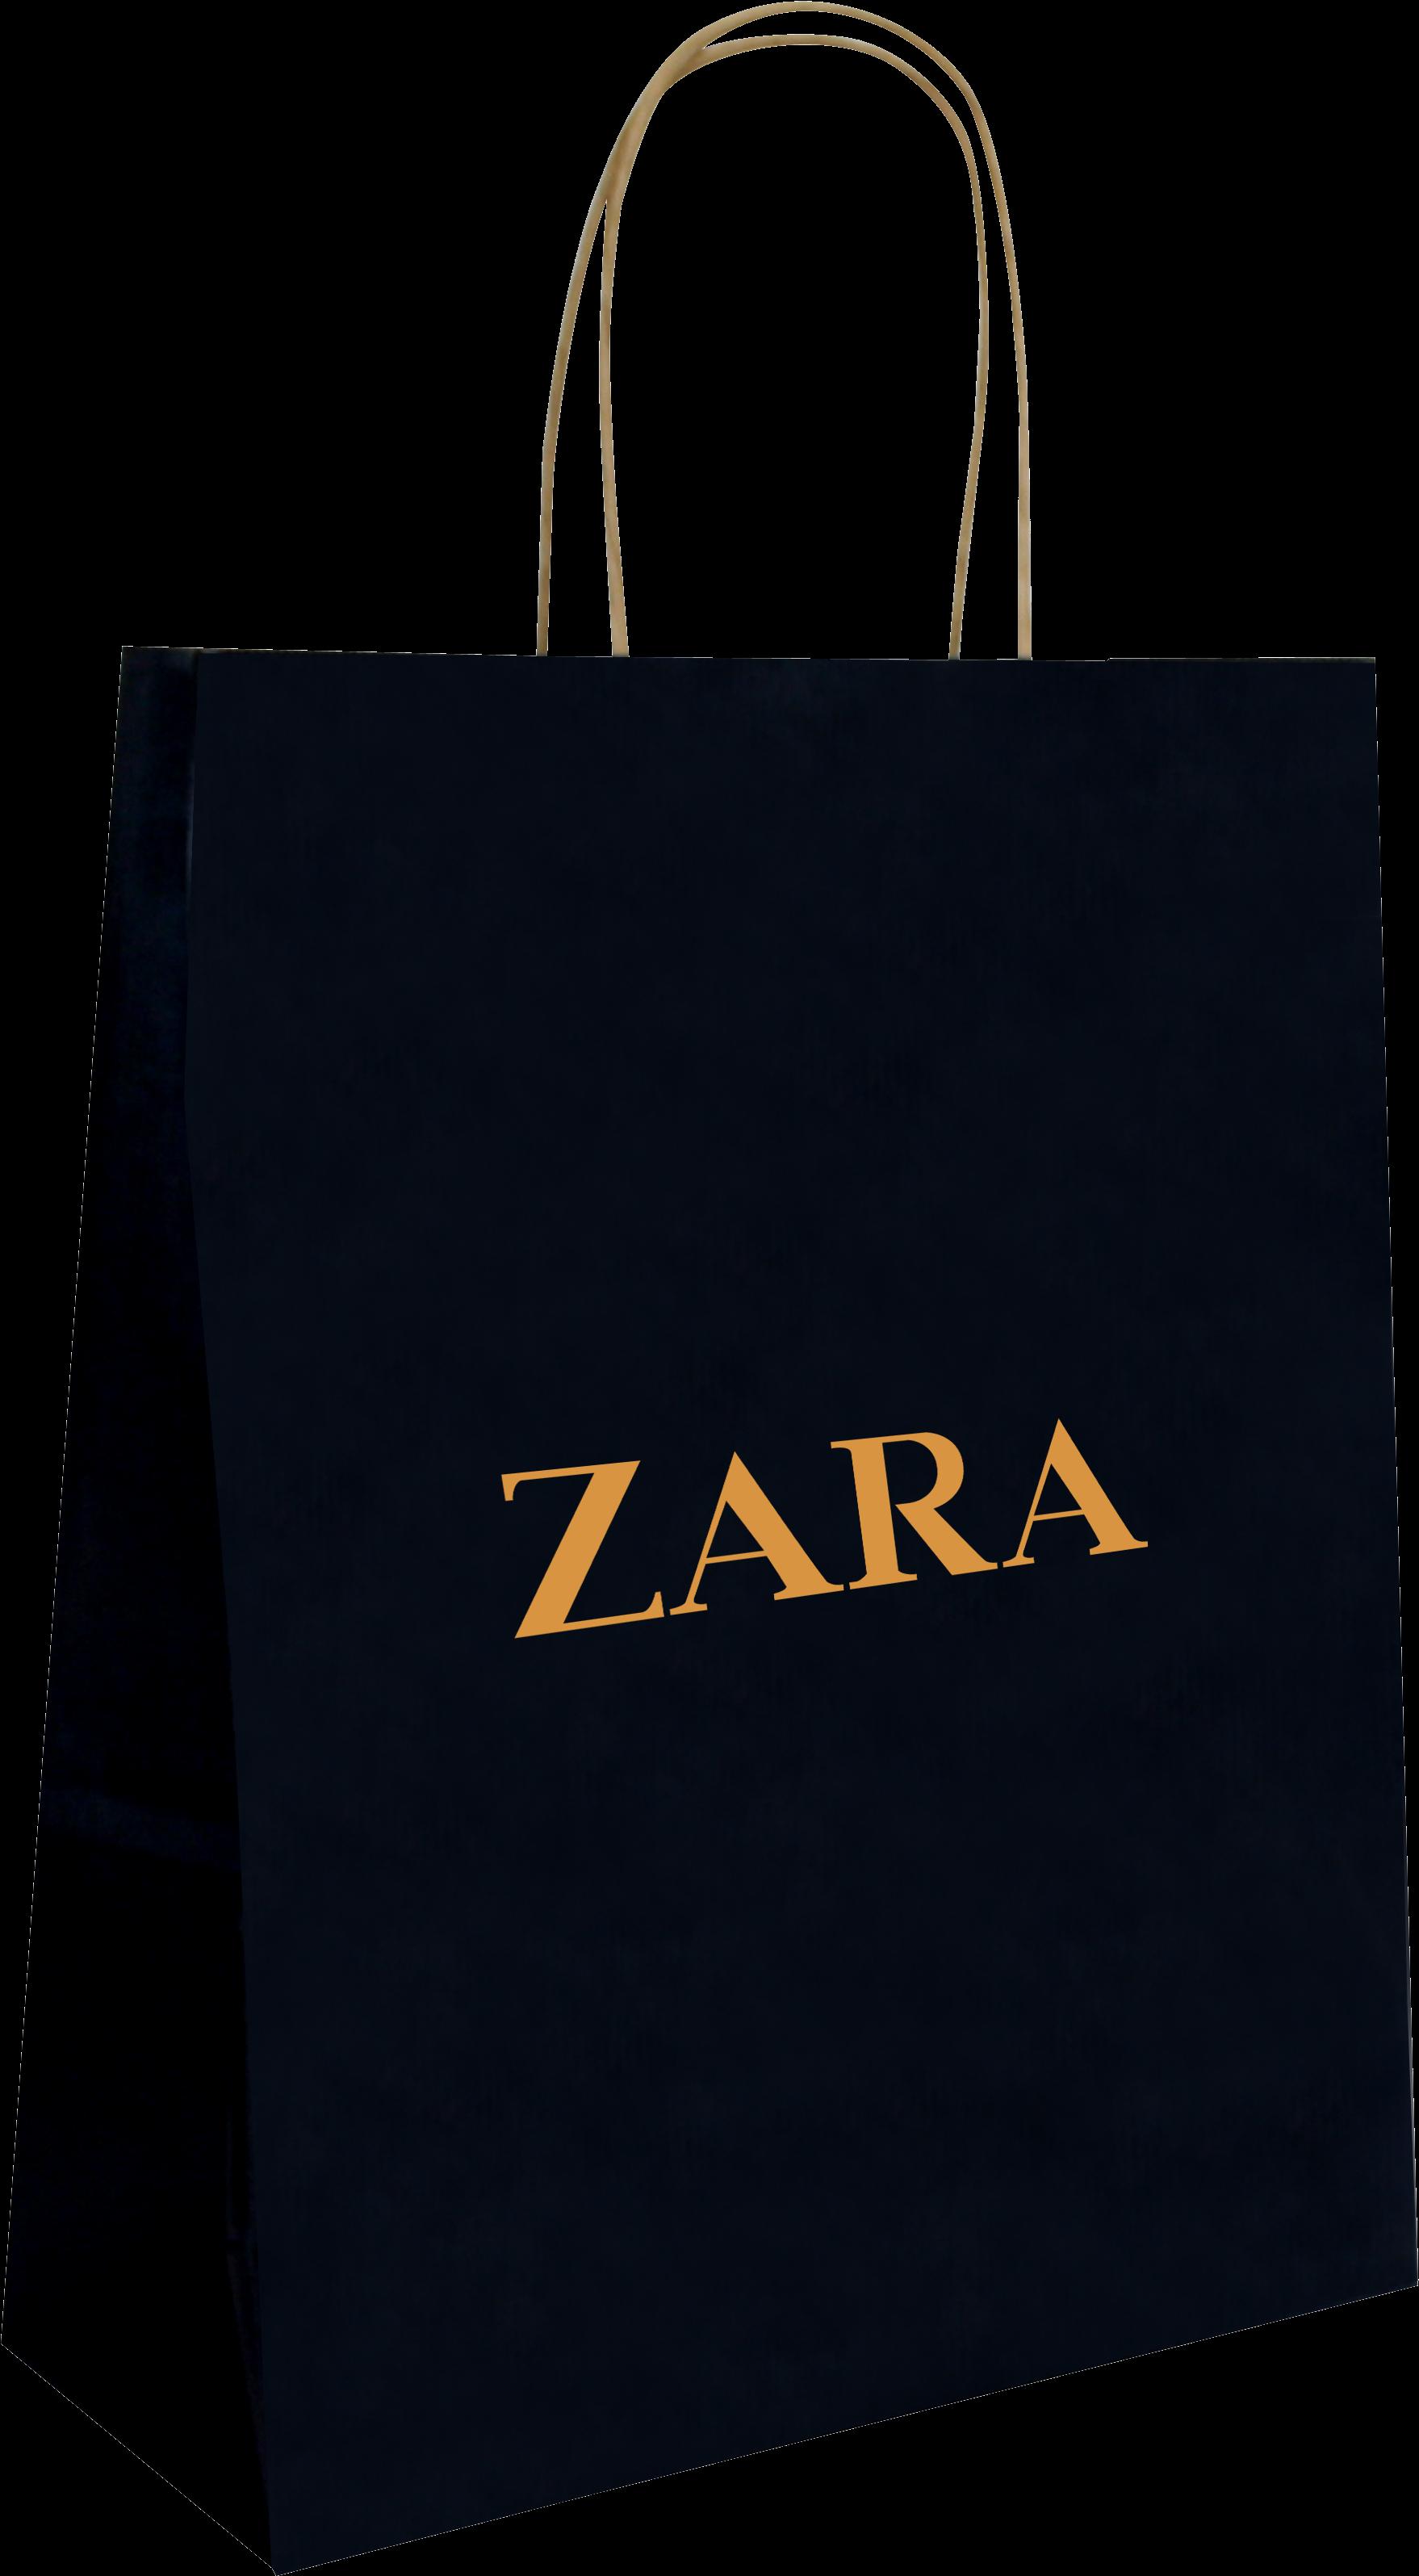 Zara Shopping Bag Stock Photos - Free & Royalty-Free Stock Photos